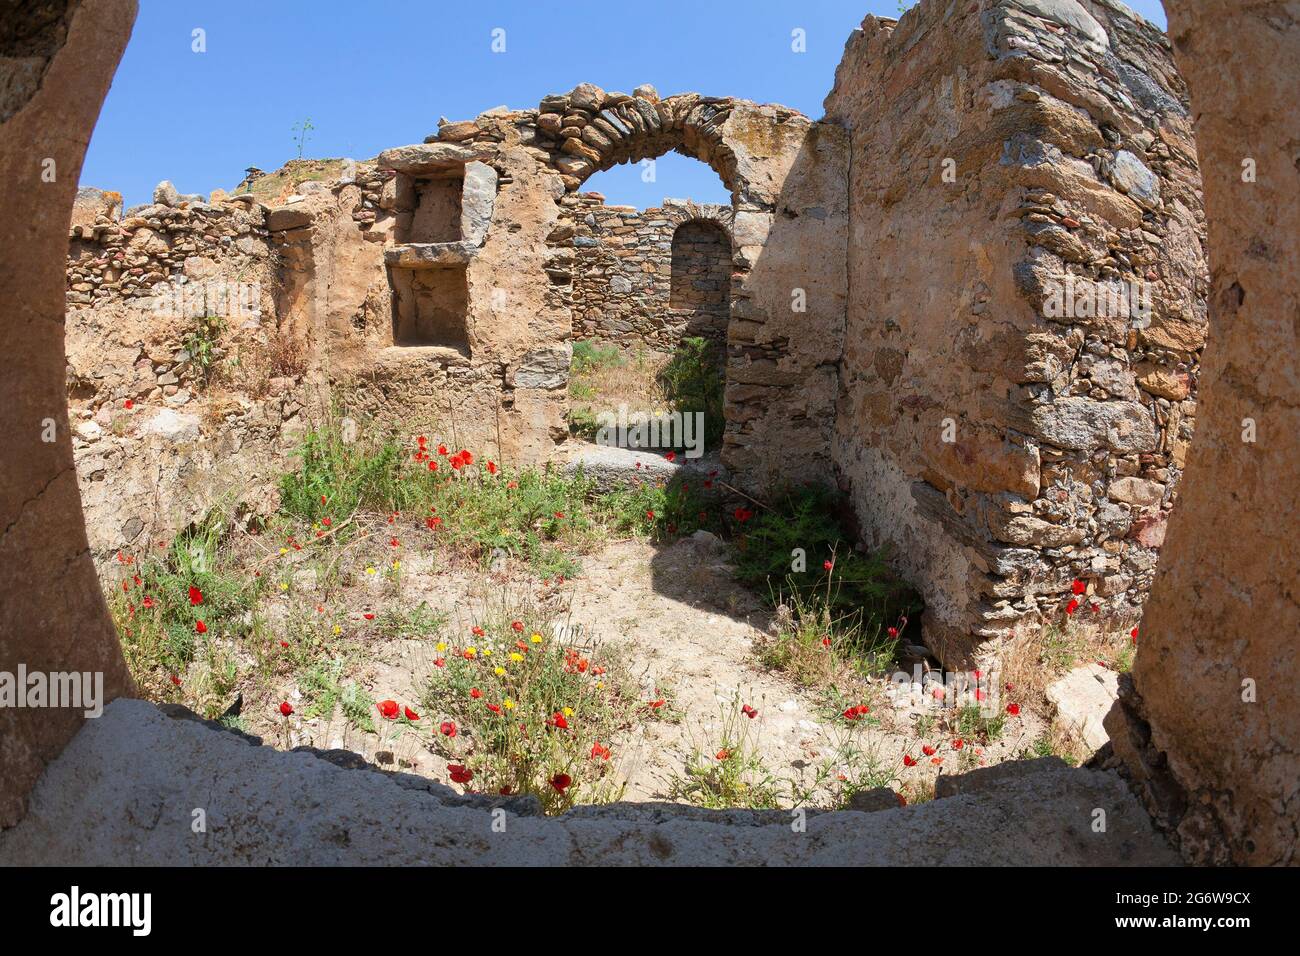 Papaveri rossi che crescono all'interno delle pareti in pietra e degli archi di una vecchia rovina greca all'interno dell'isola di Mykonos Foto Stock